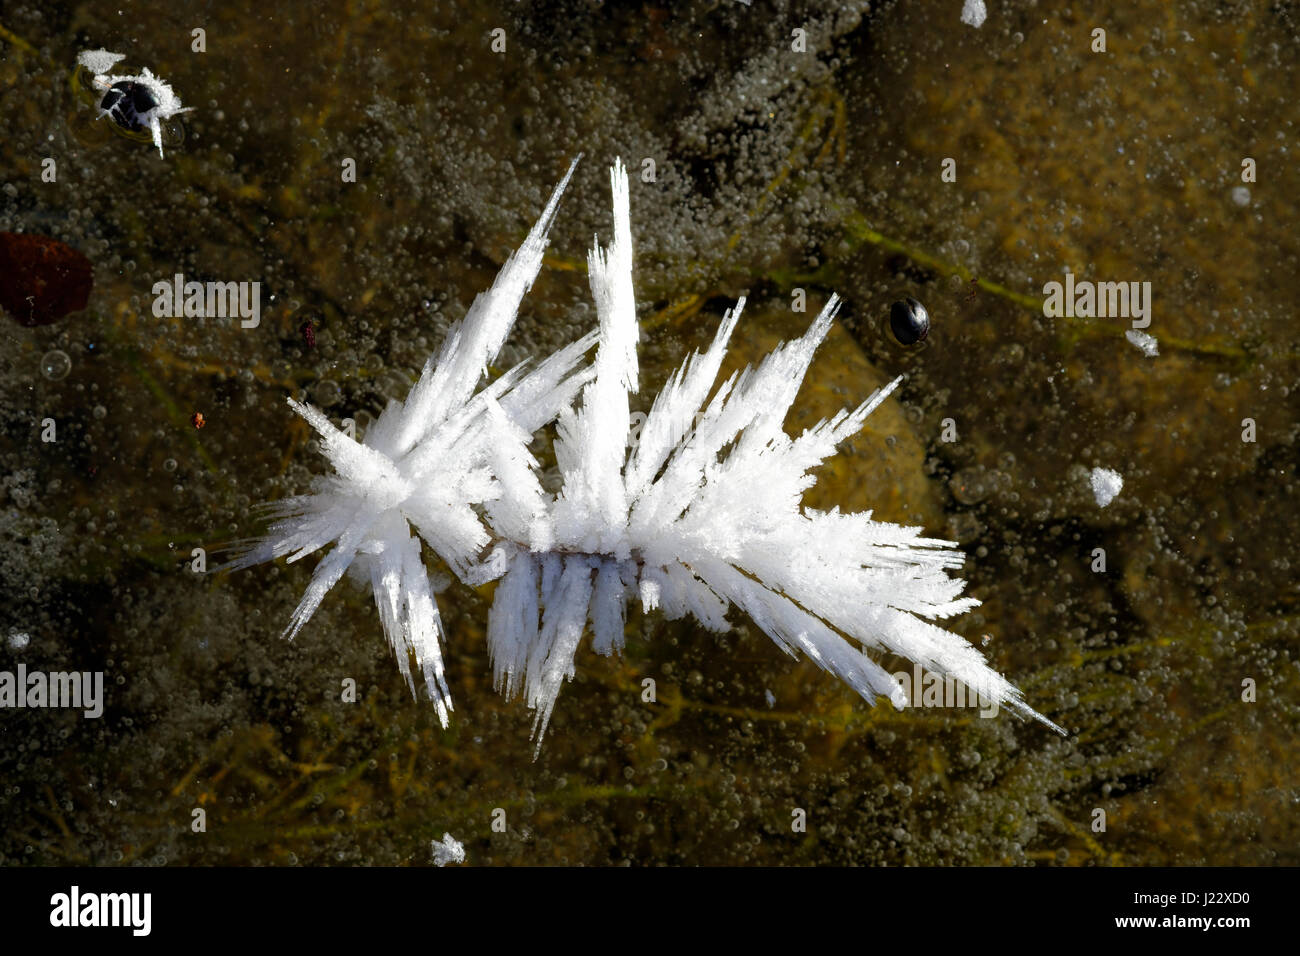 Eiskristalle auf Eisfläche, Naturschutzgebiet Isarauen, Bayern Deutschland Foto Stock